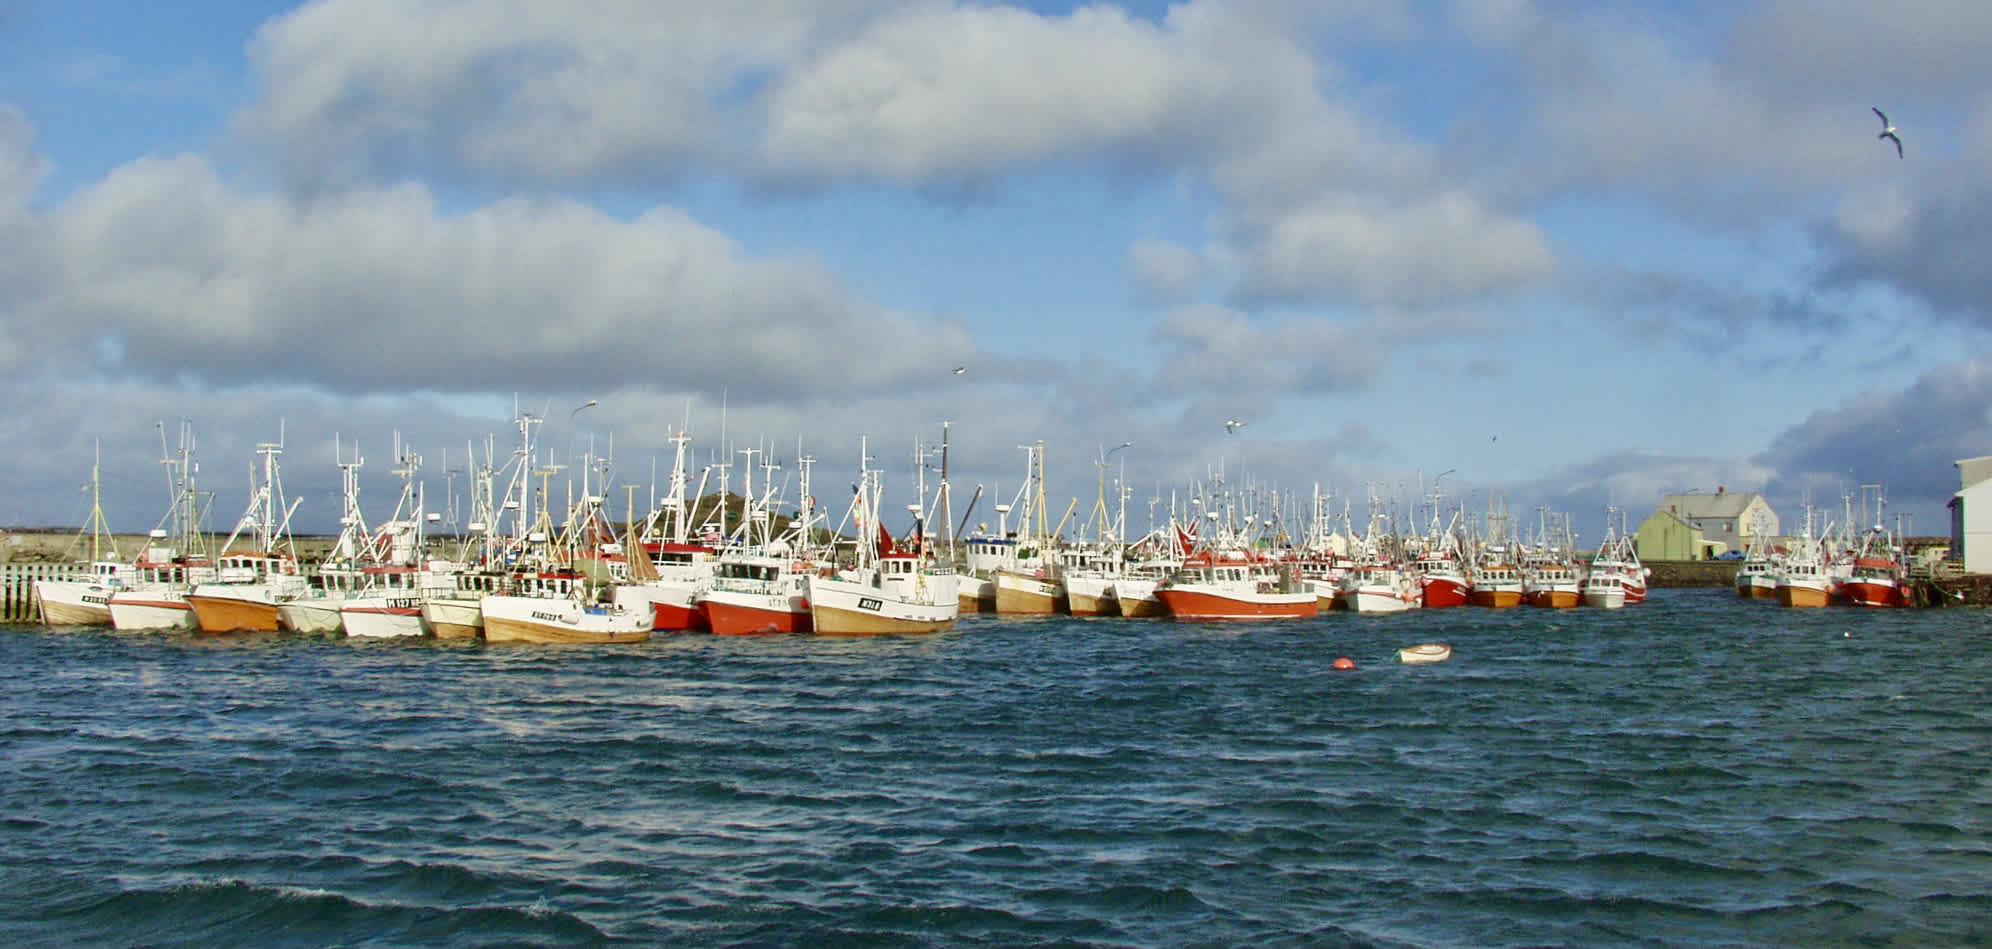 The fishing fleet in Røst during Lofotfiske. Image courtesy of Redningsselskapet.